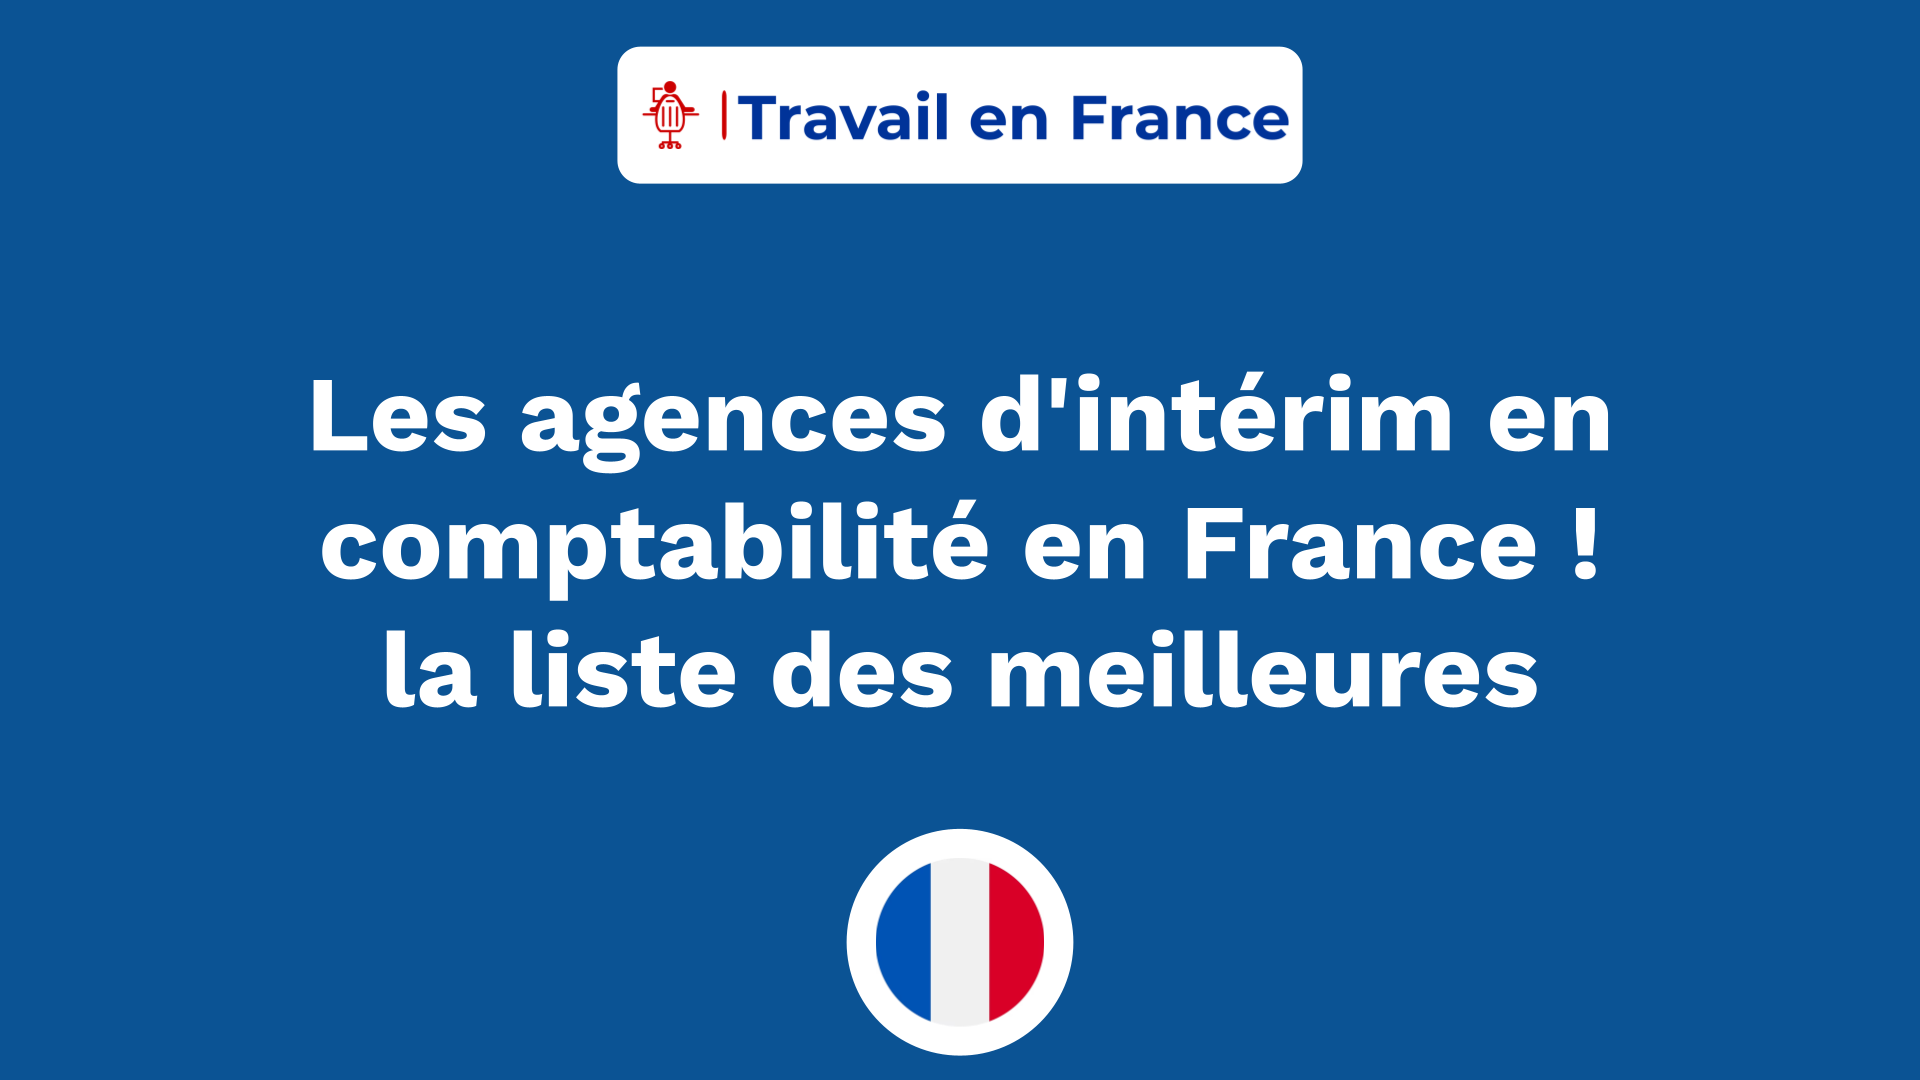 Les agences d'intérim en comptabilité en France ! la liste des meilleures